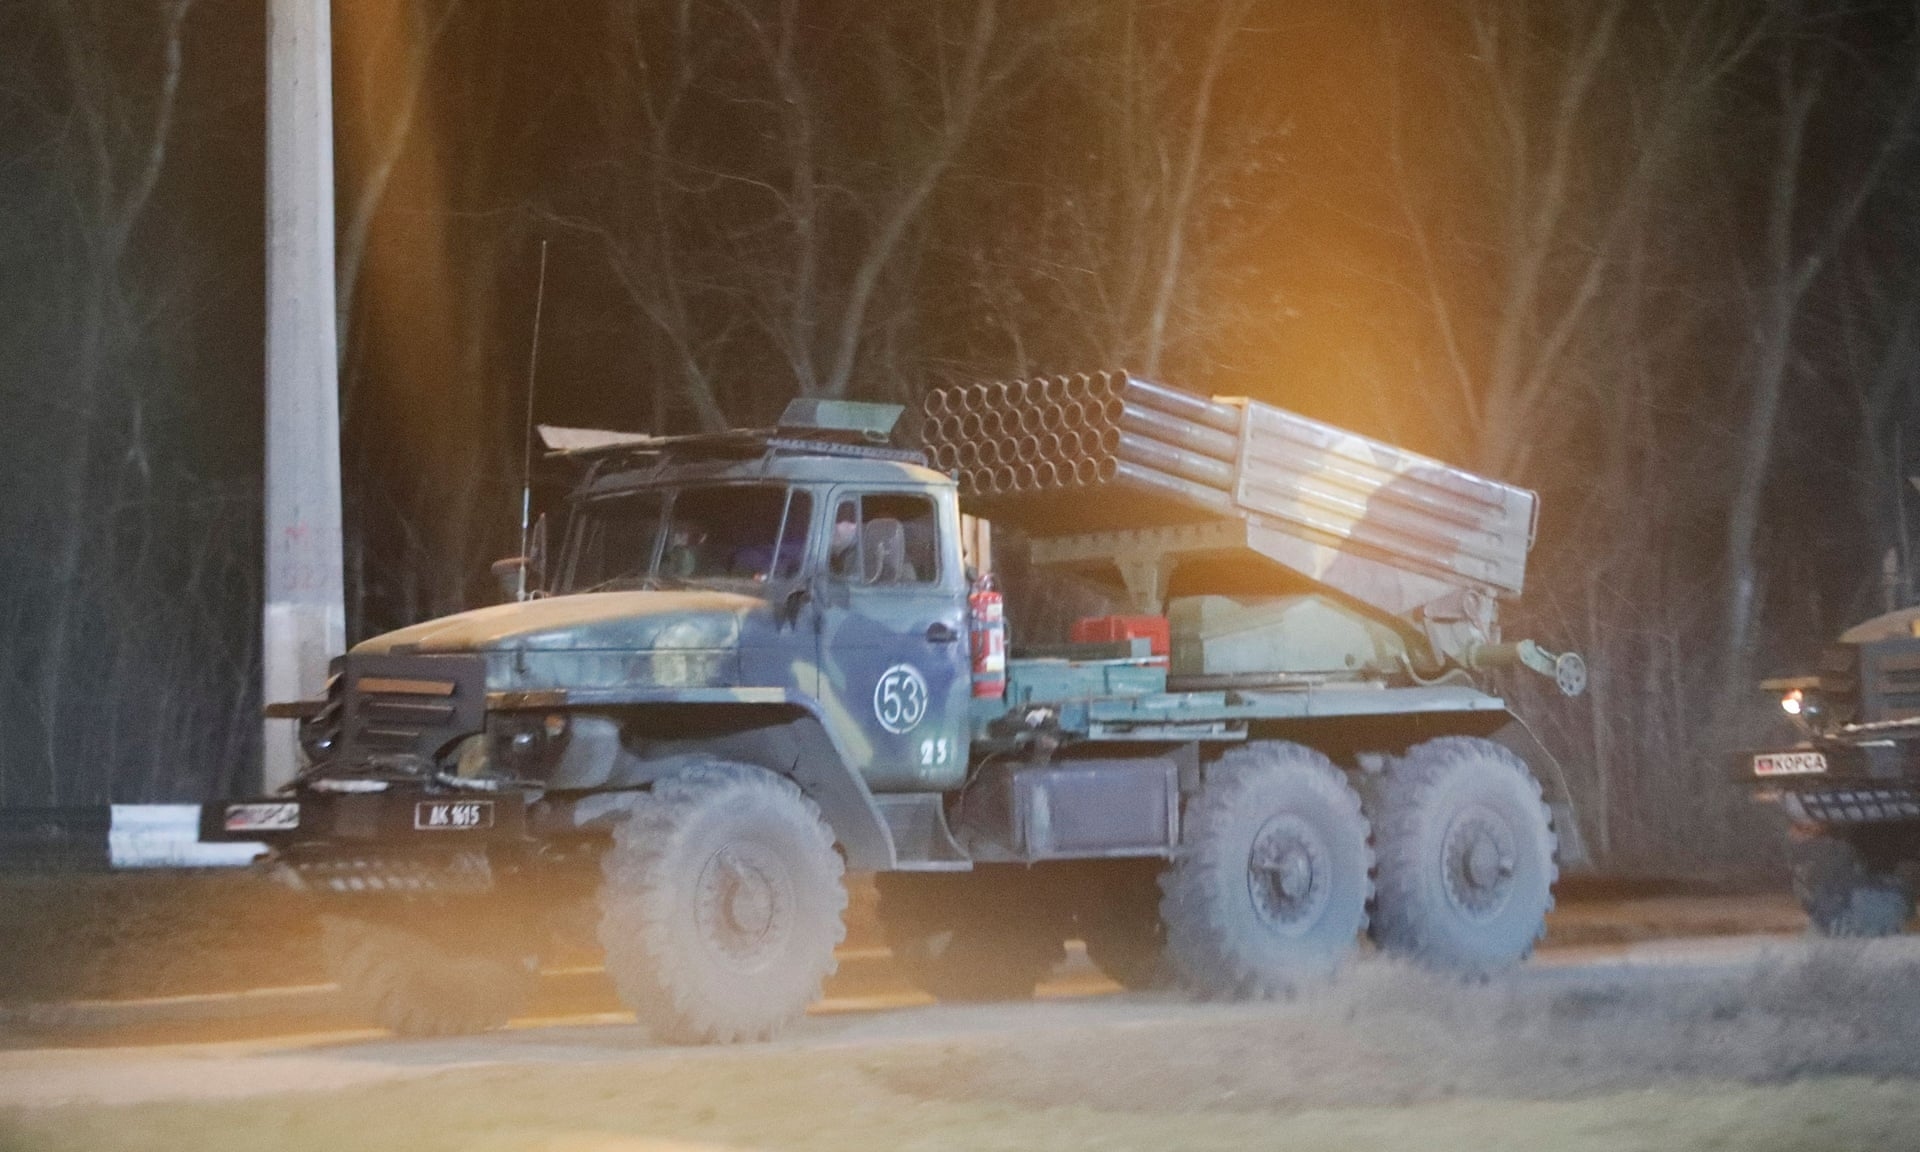 Pháo phản lực Grad BM-21 được ghi nhận ở ngoại ô thành phố Donetsk, trong khu vực do phe ly khai kiểm soát, thuộc vùng Donbass phía đông Ukraine ngày 23/2. Ảnh: Reuters.